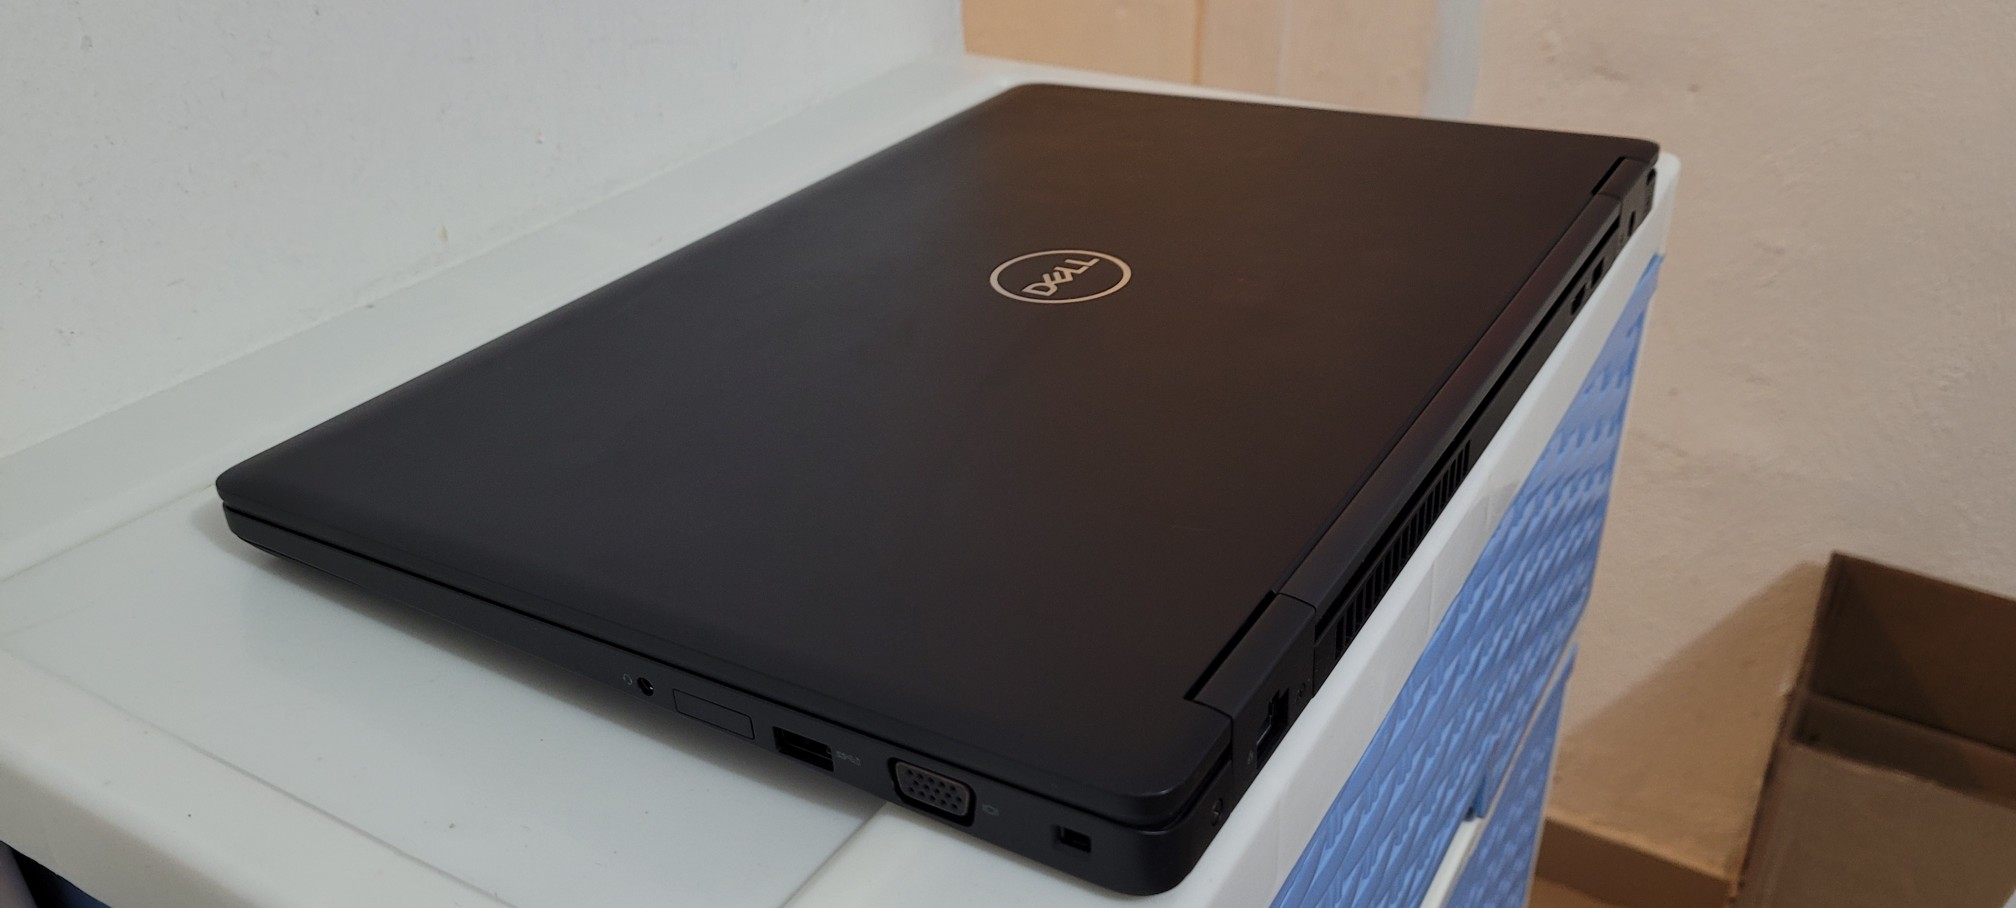 computadoras y laptops - Dell 5580 17 Pulg Core i5 7ma Gen Ram 12gb DDR4 Nvidea mx940 2gb Dedicada 2